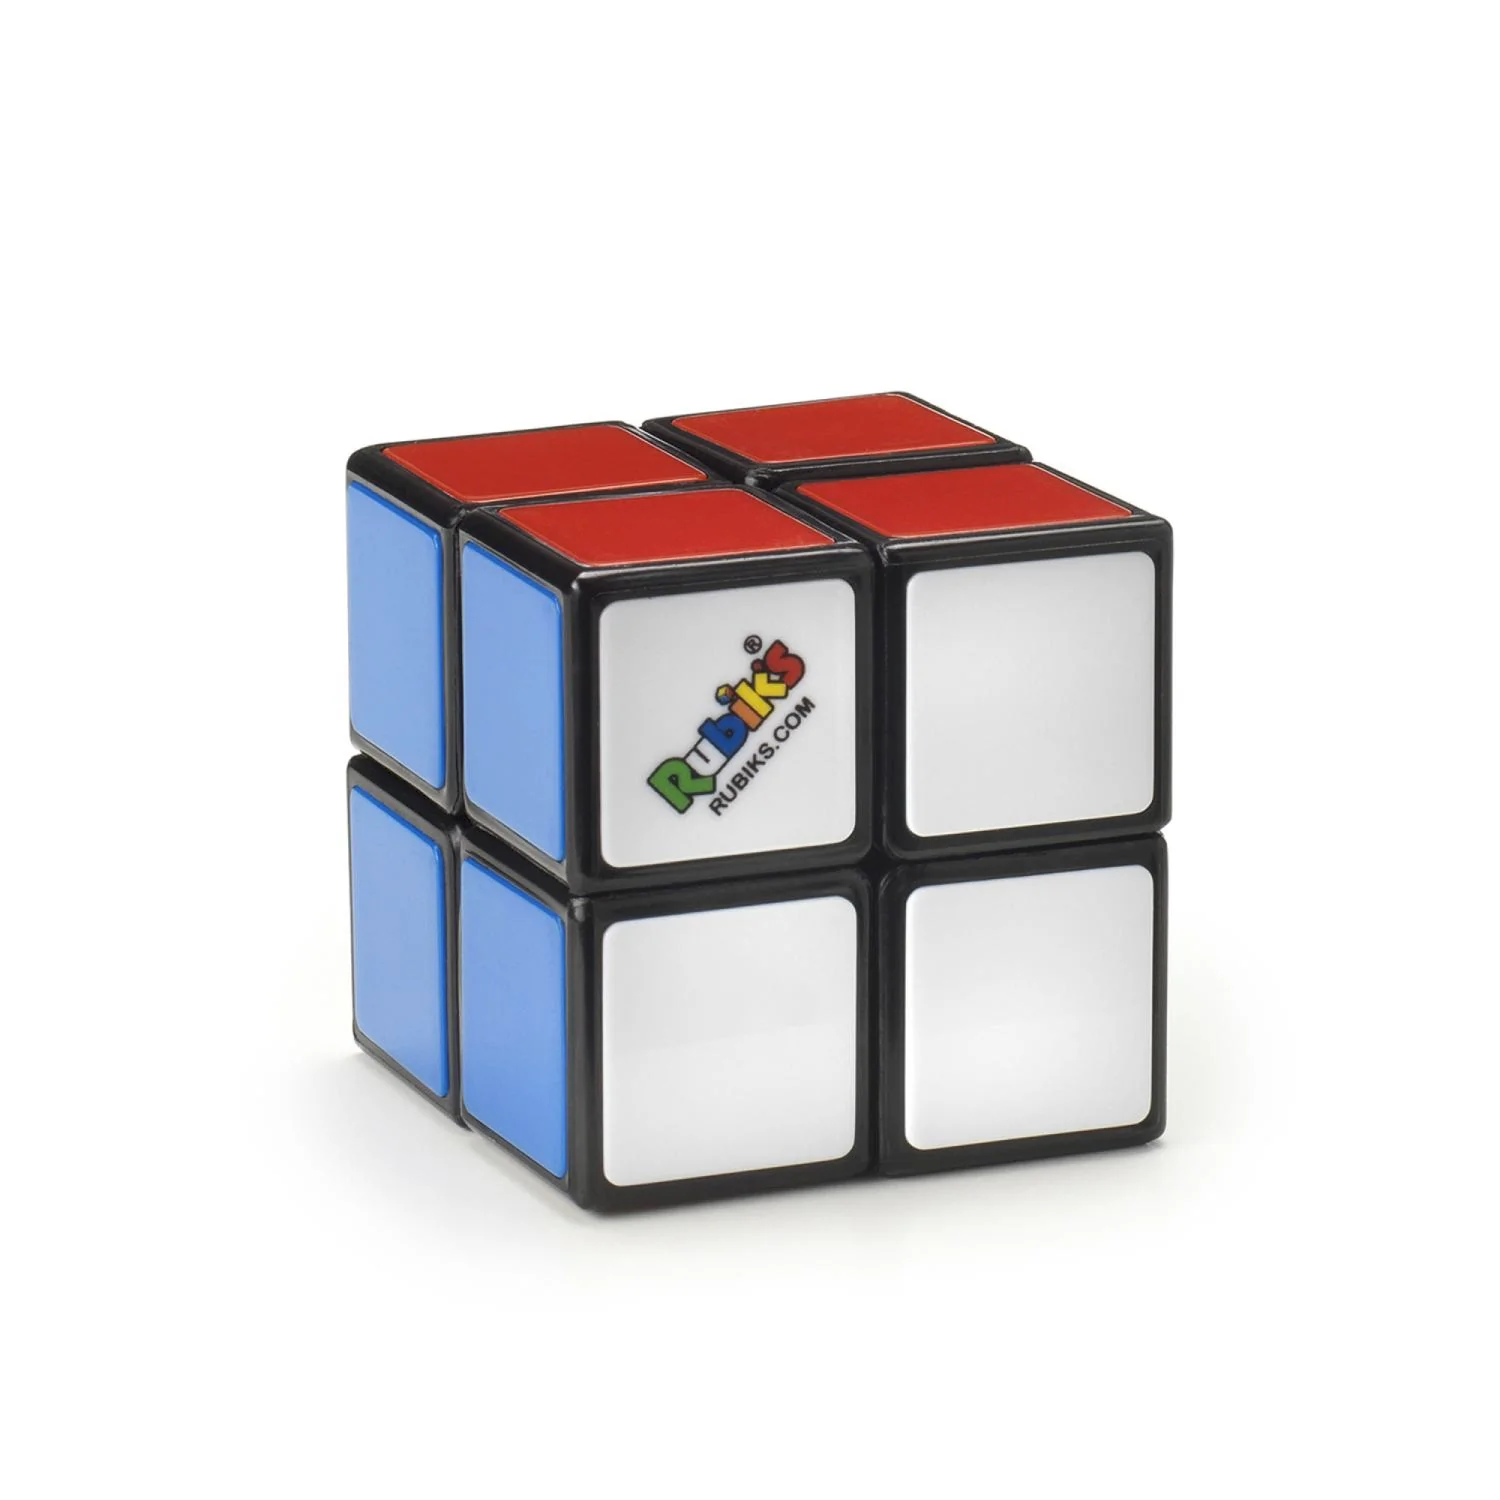 Optimal 2x2 Rubik's Cube Solver